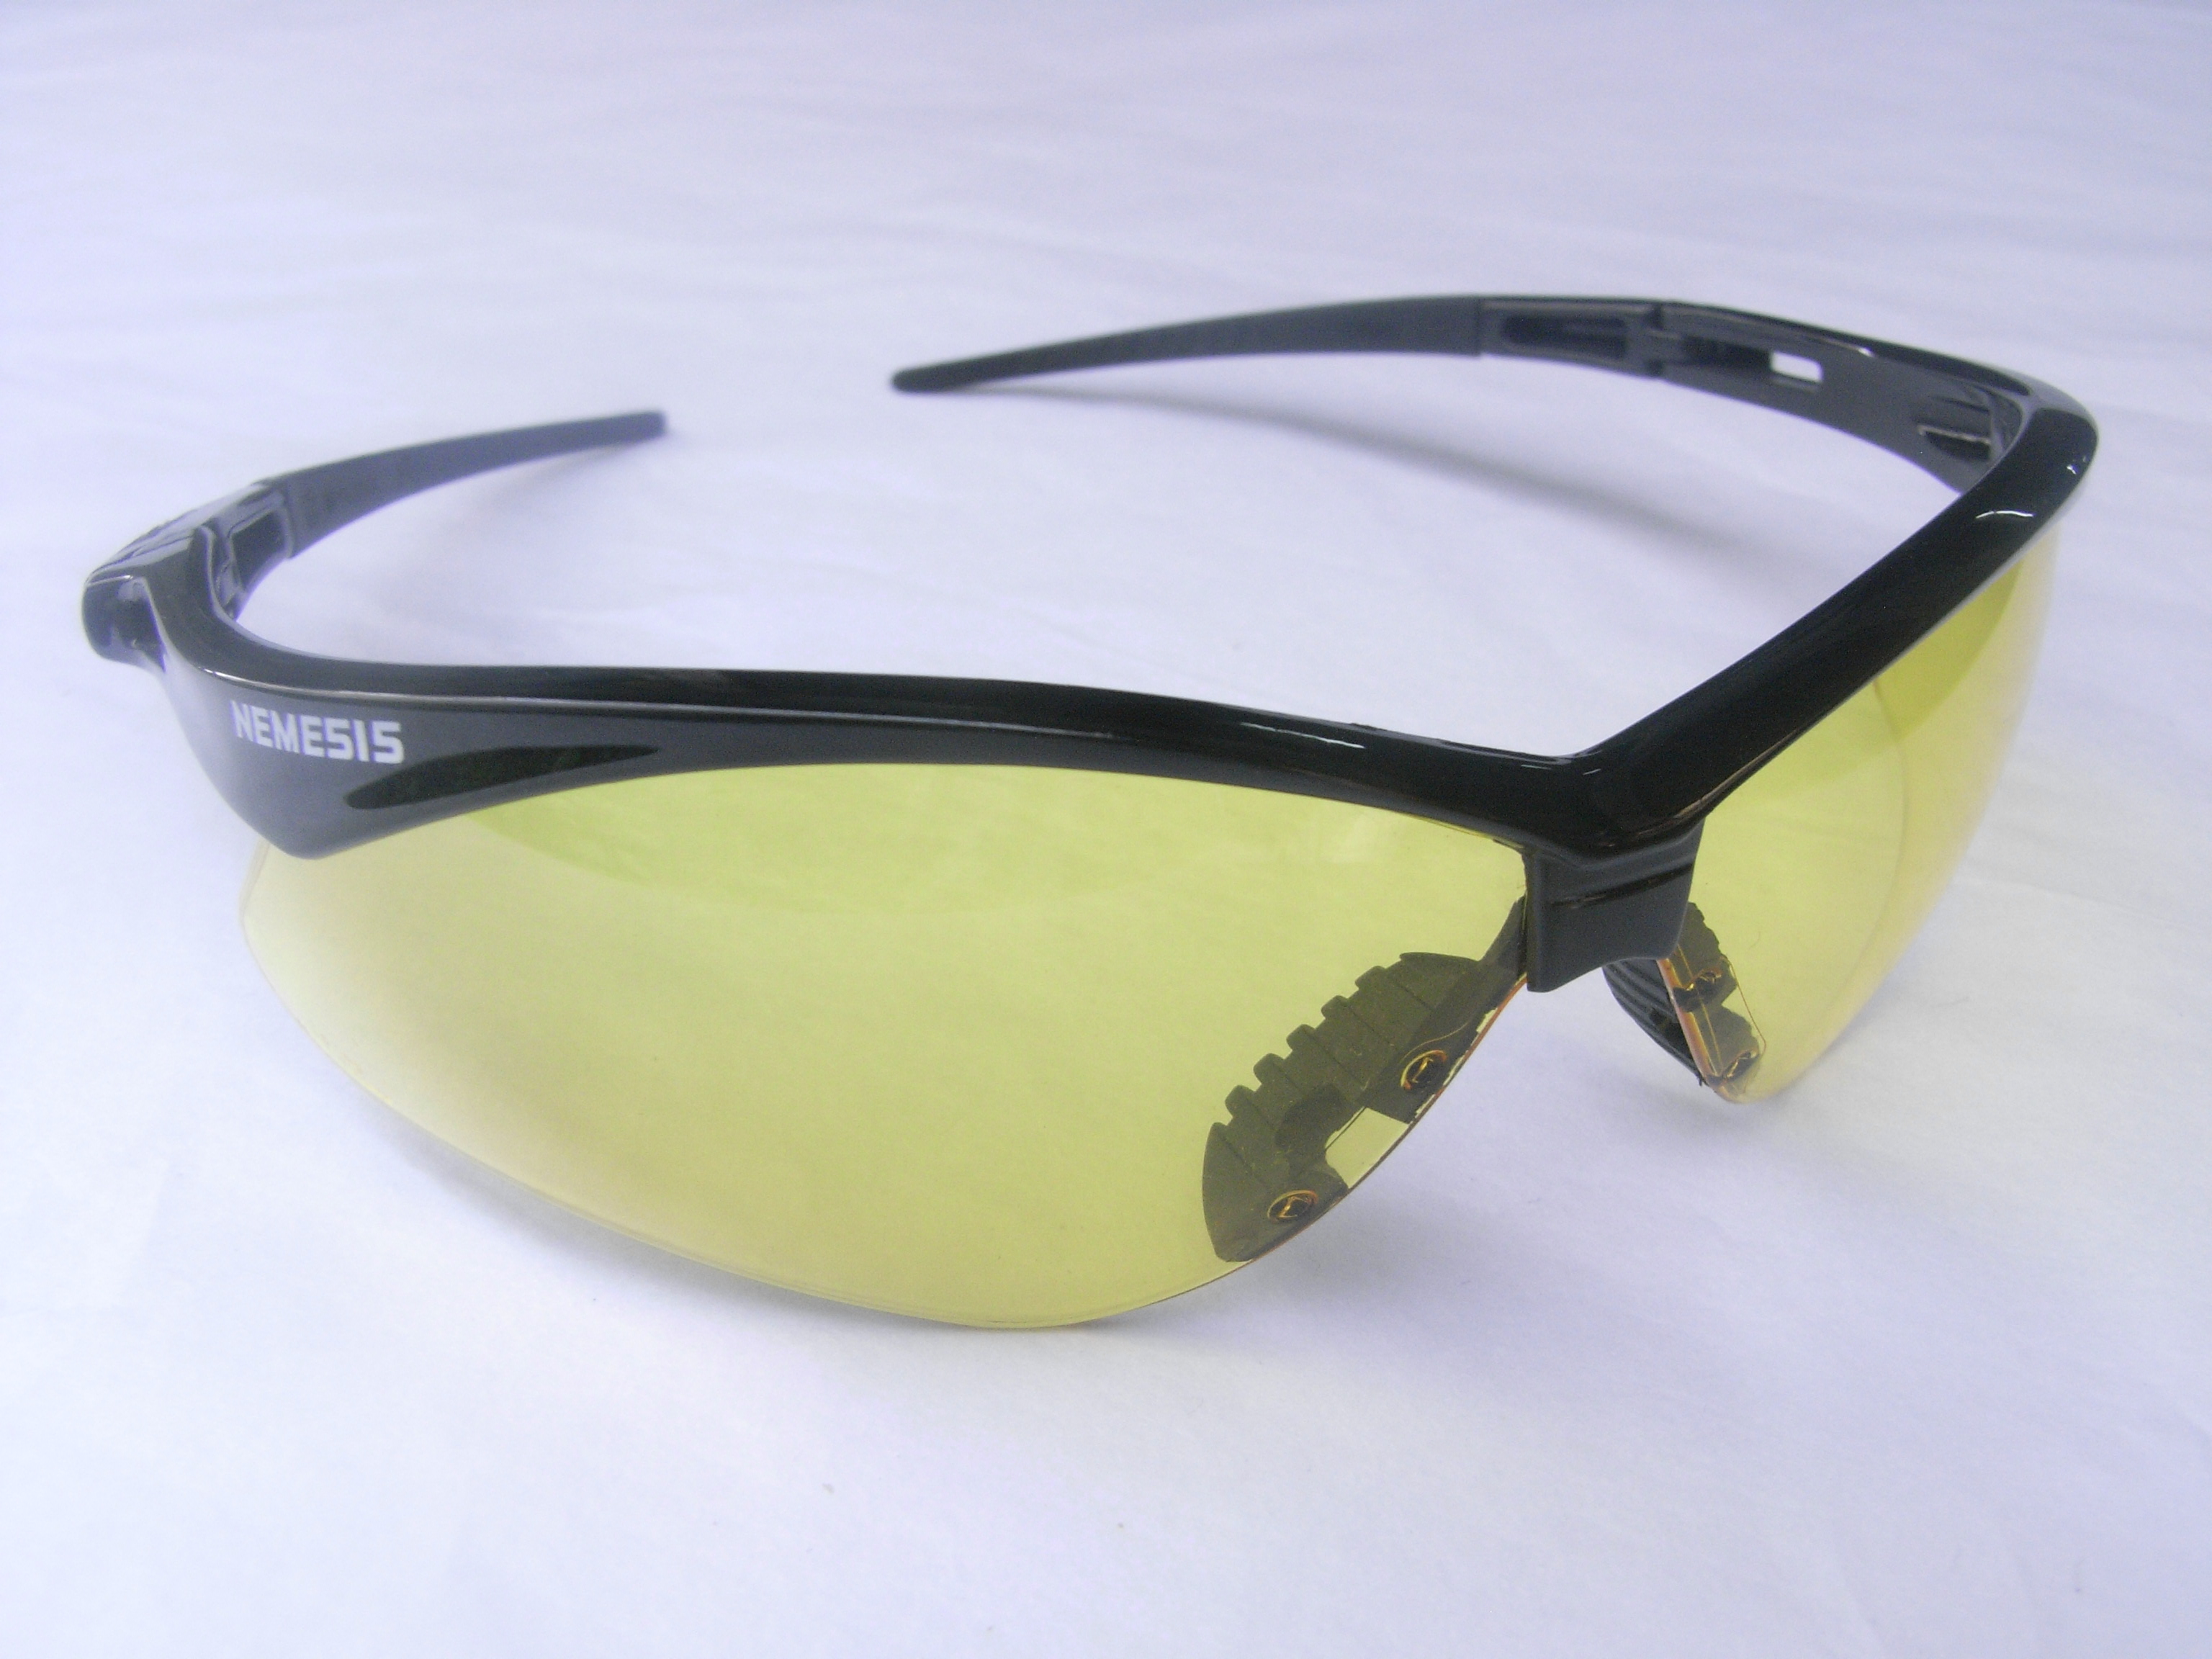 แว่นตาเซฟตี้ , แว่นตากันสะเก็ด , แว่นตา NEMESIS , BLACK FRAME AMBER LENS SAFETY GLASSES 3